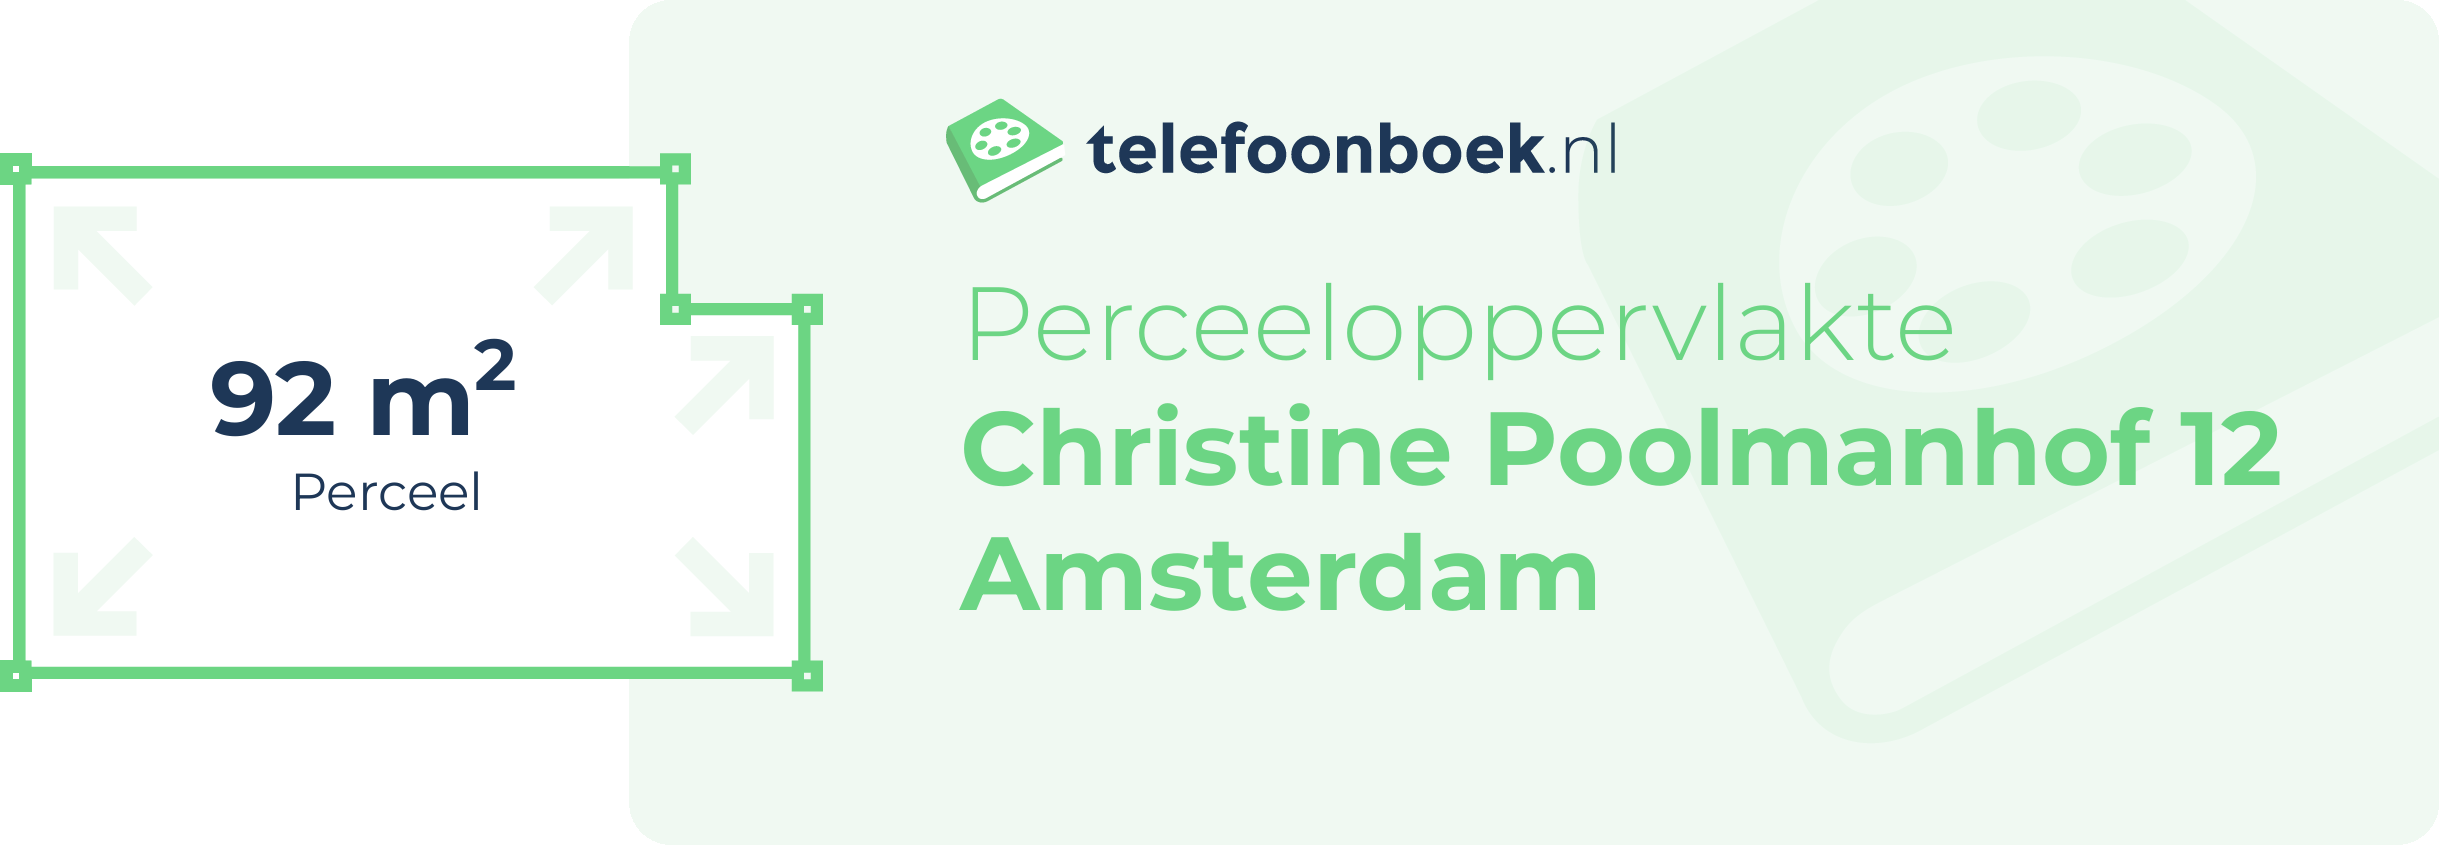 Perceeloppervlakte Christine Poolmanhof 12 Amsterdam